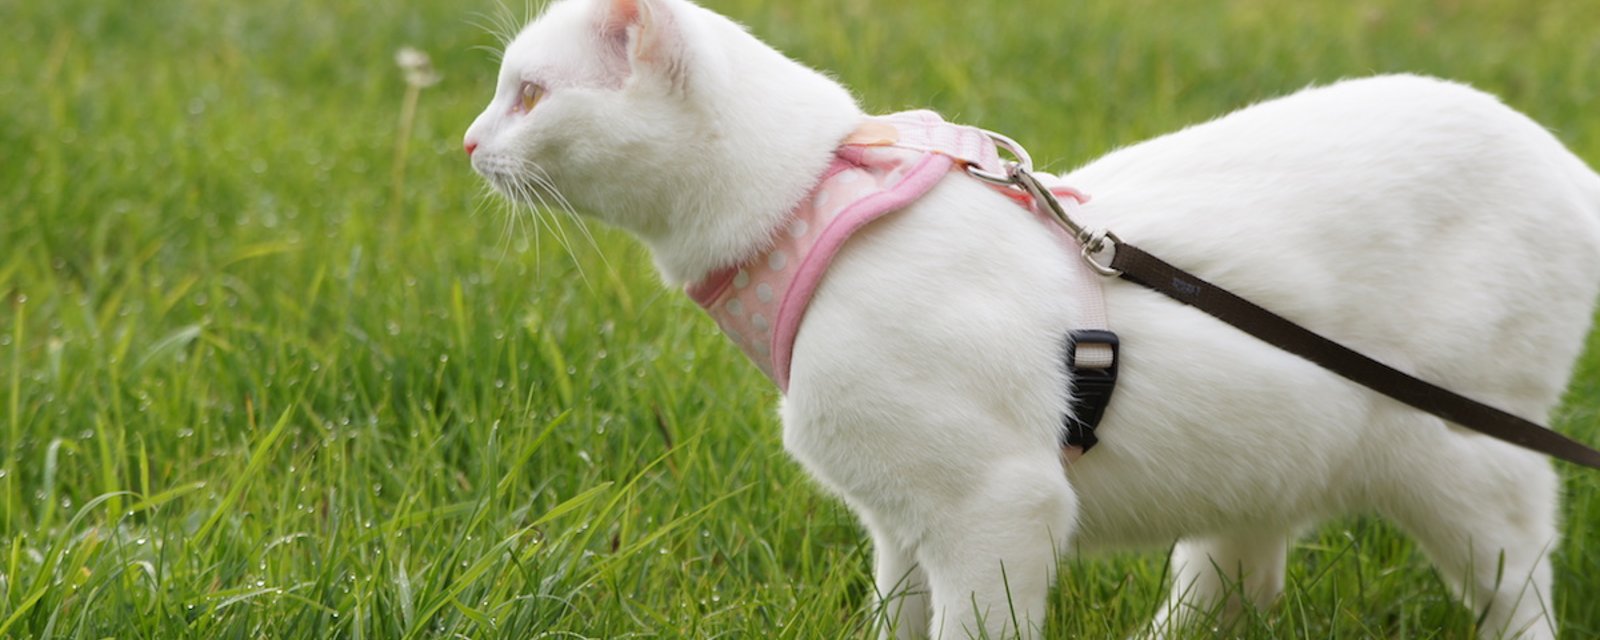 7 étapes pour apprendre à son chat à se promener en laisse